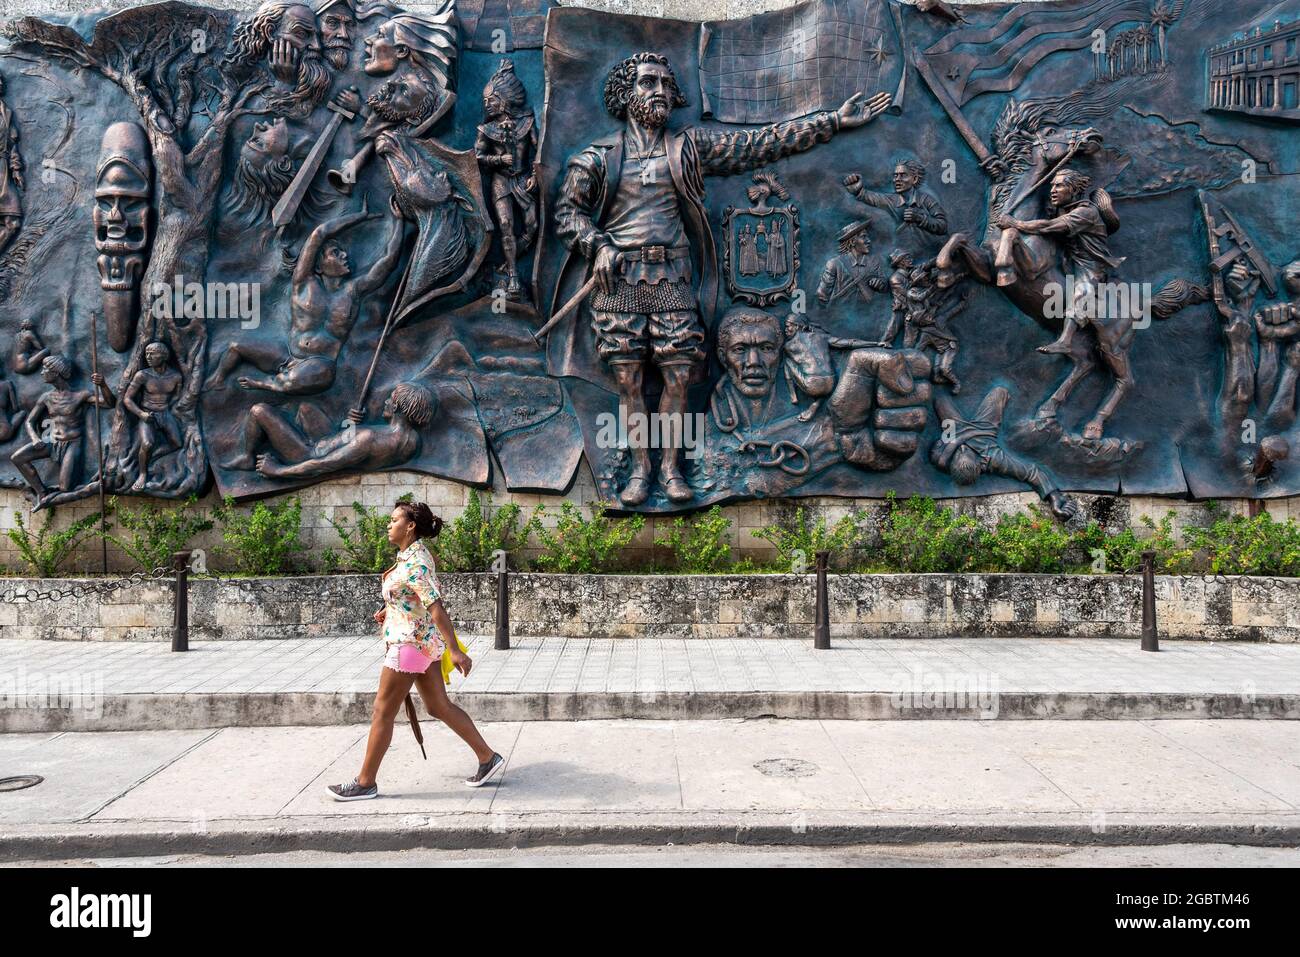 Murale Origenes, sculpture cubaine en métal, Holguin City, Cuba 2016 Banque D'Images